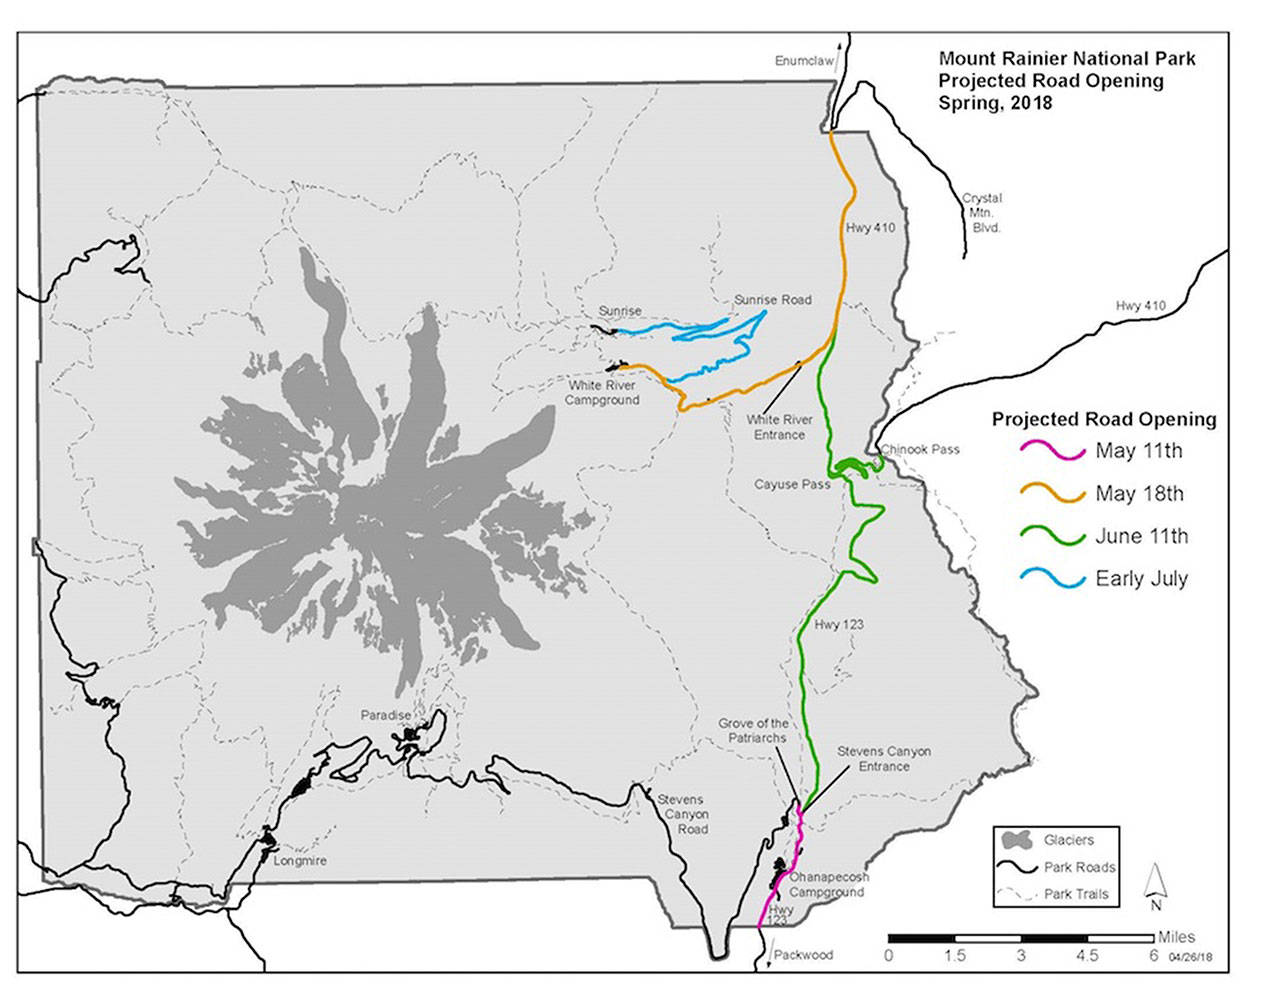 Mount Rainier announces projected road opening dates | Mount Rainier National Park